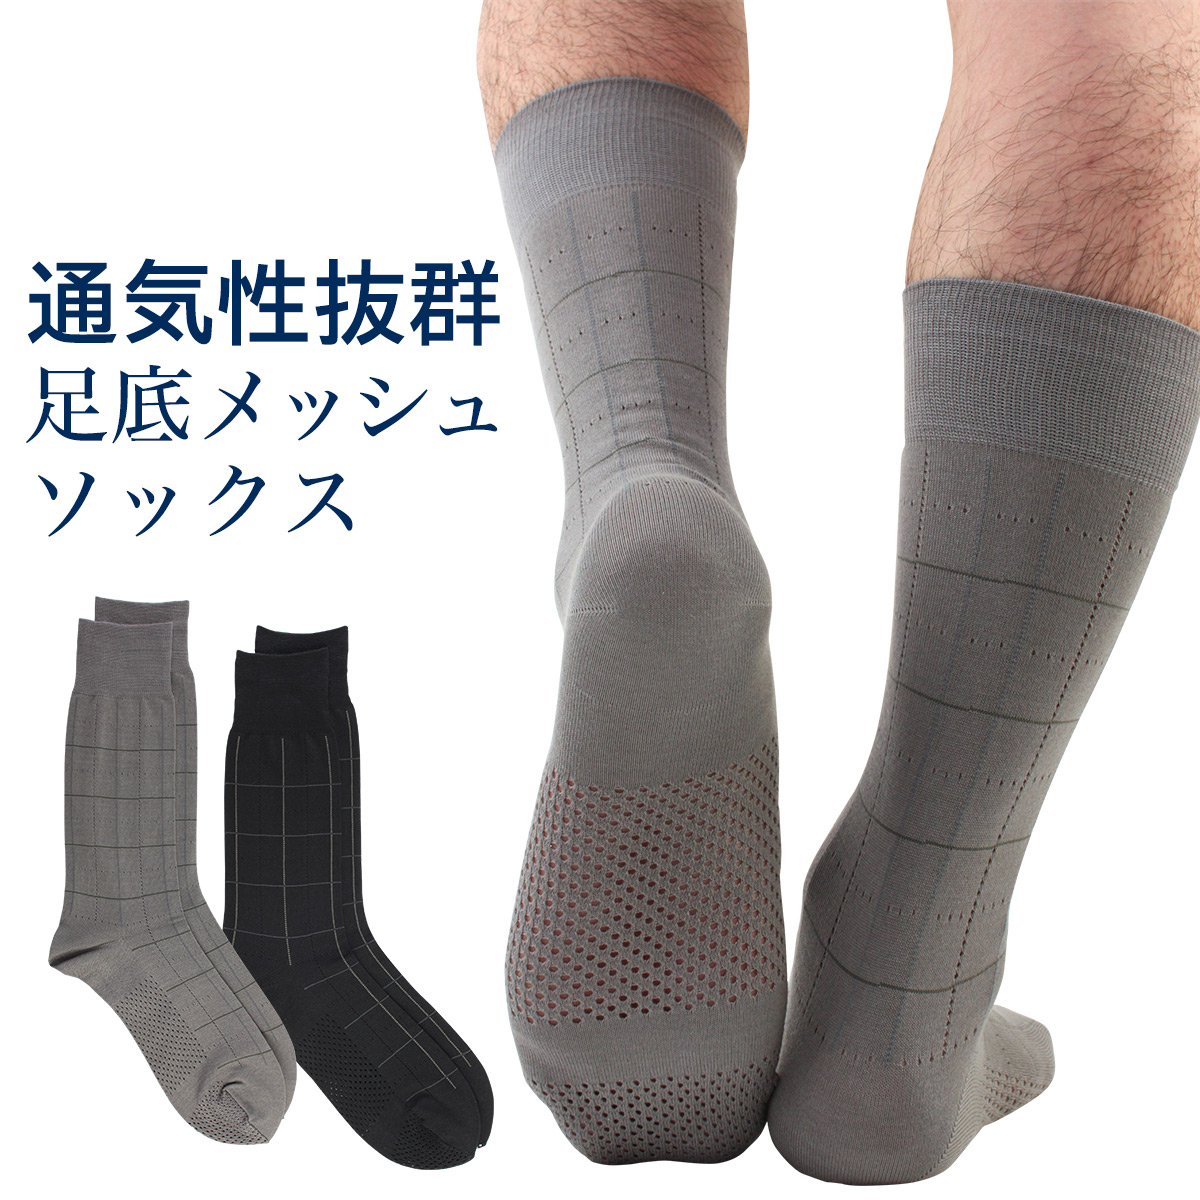 gay men feet in dress socks japanese men